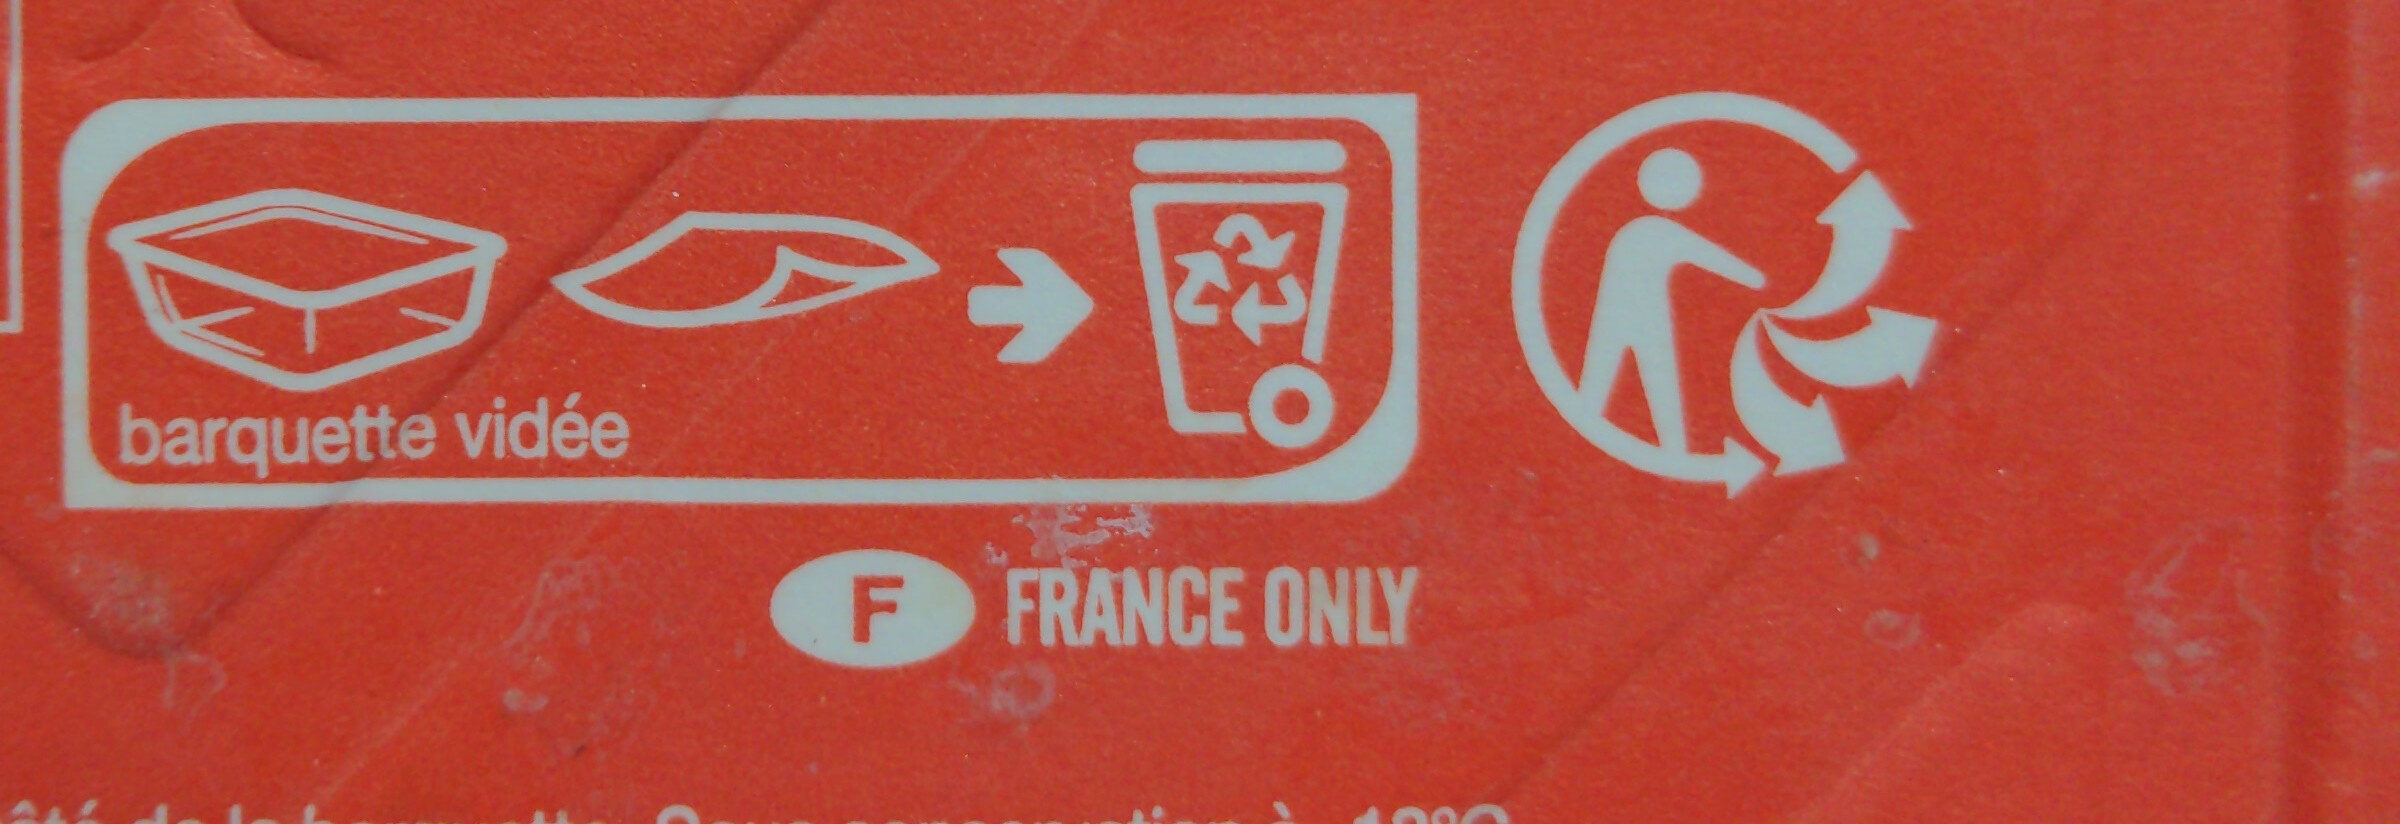 Cannelloni à la bolognaise - Instruction de recyclage et/ou informations d'emballage